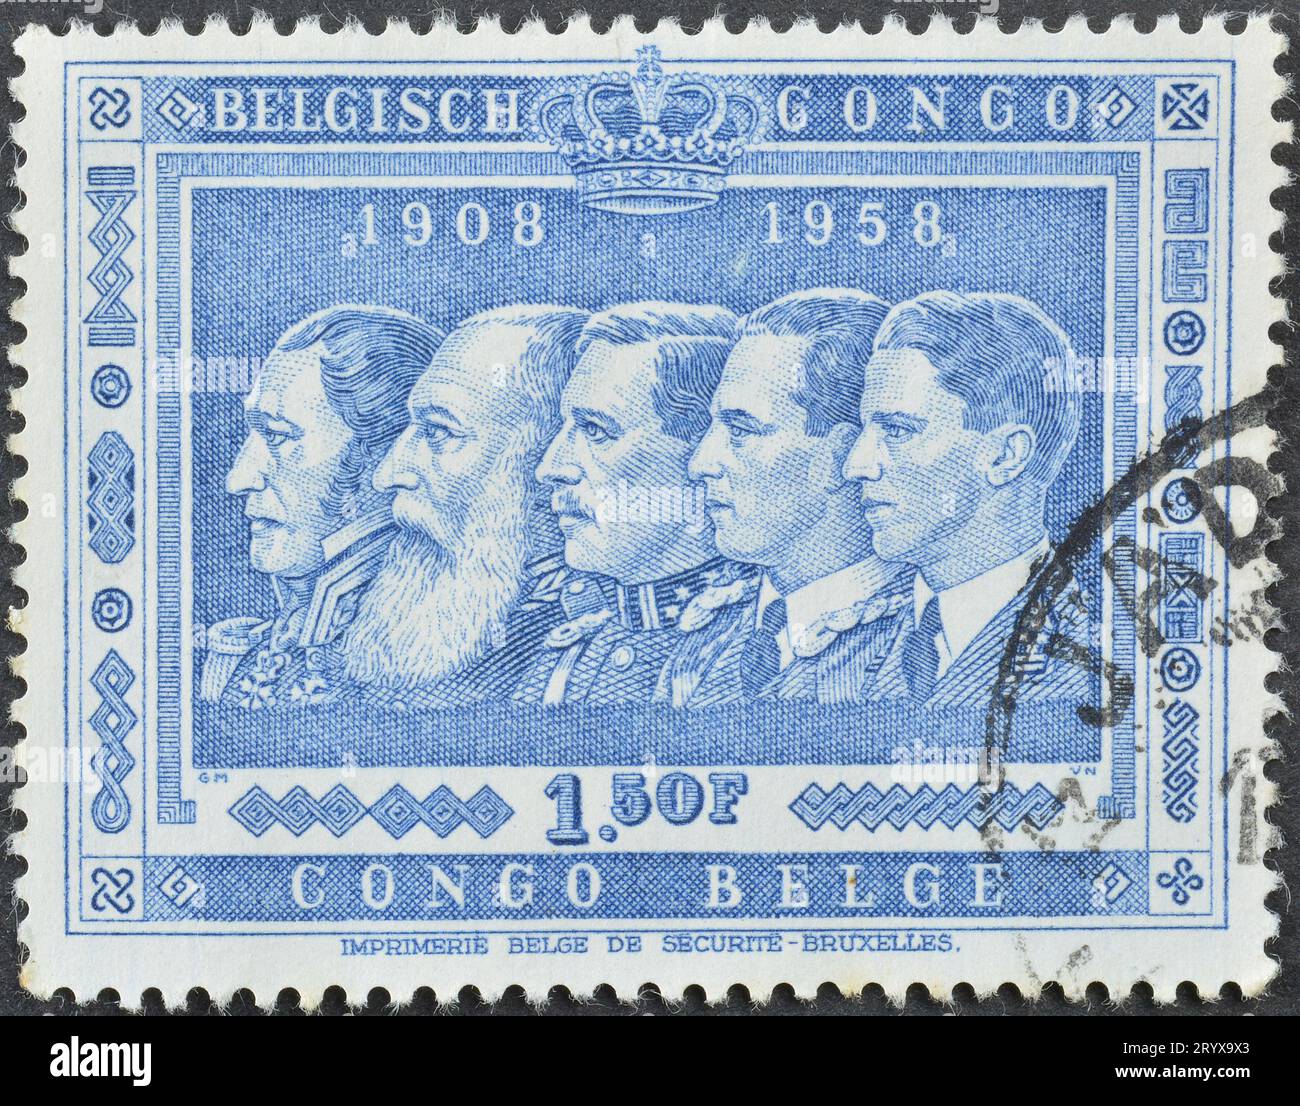 Gestempelte Briefmarke, gedruckt vom belgischen Kongo, die Könige von Belgien, Belgiens Annexion des Kongo, 50. Jahrestag, um 1958 zeigt. Stockfoto